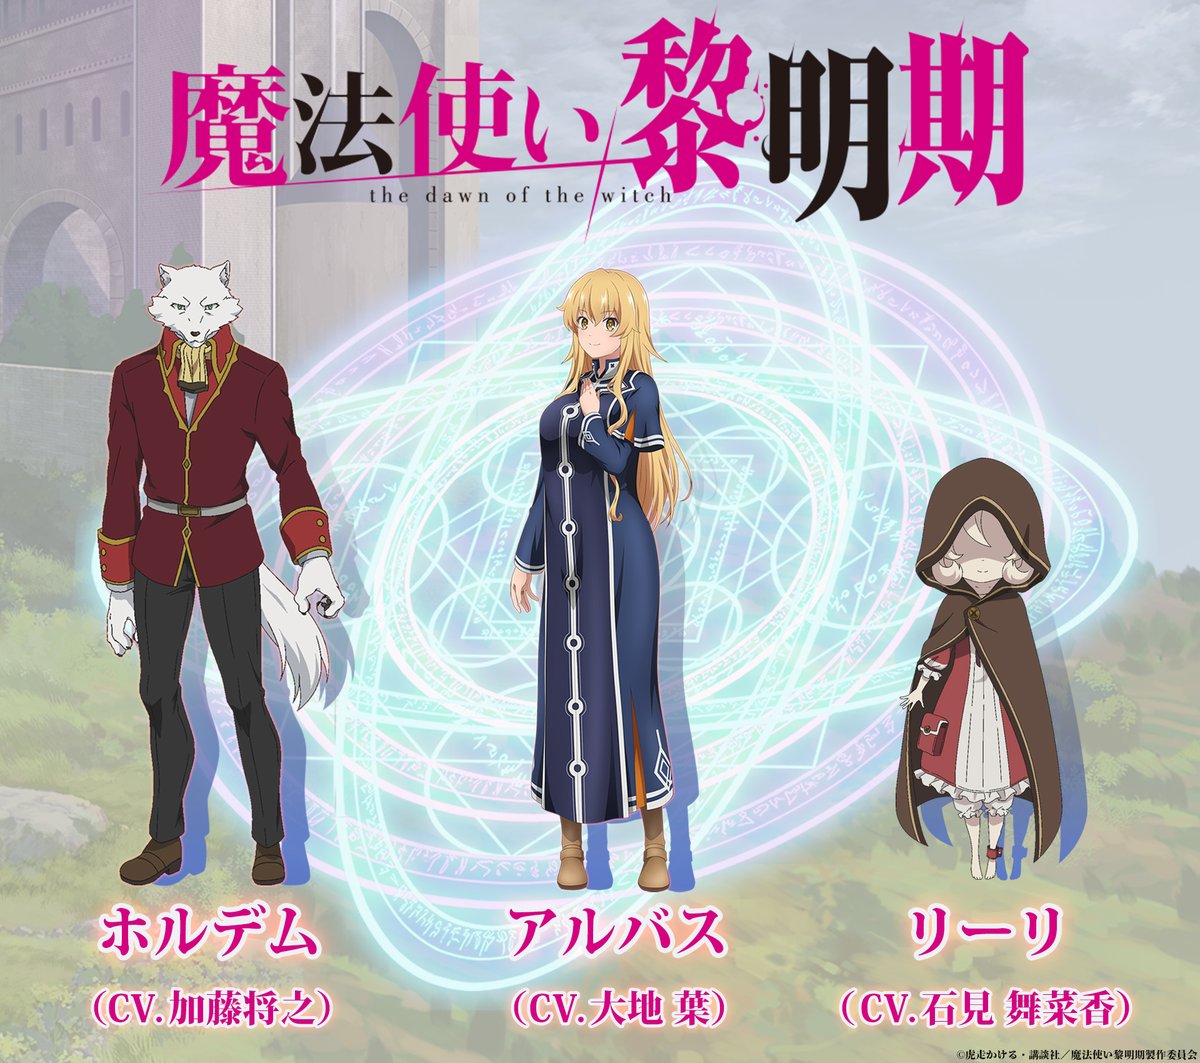 Anime de Mahoutsukai Reimeiki estreia dia 7 de Abril